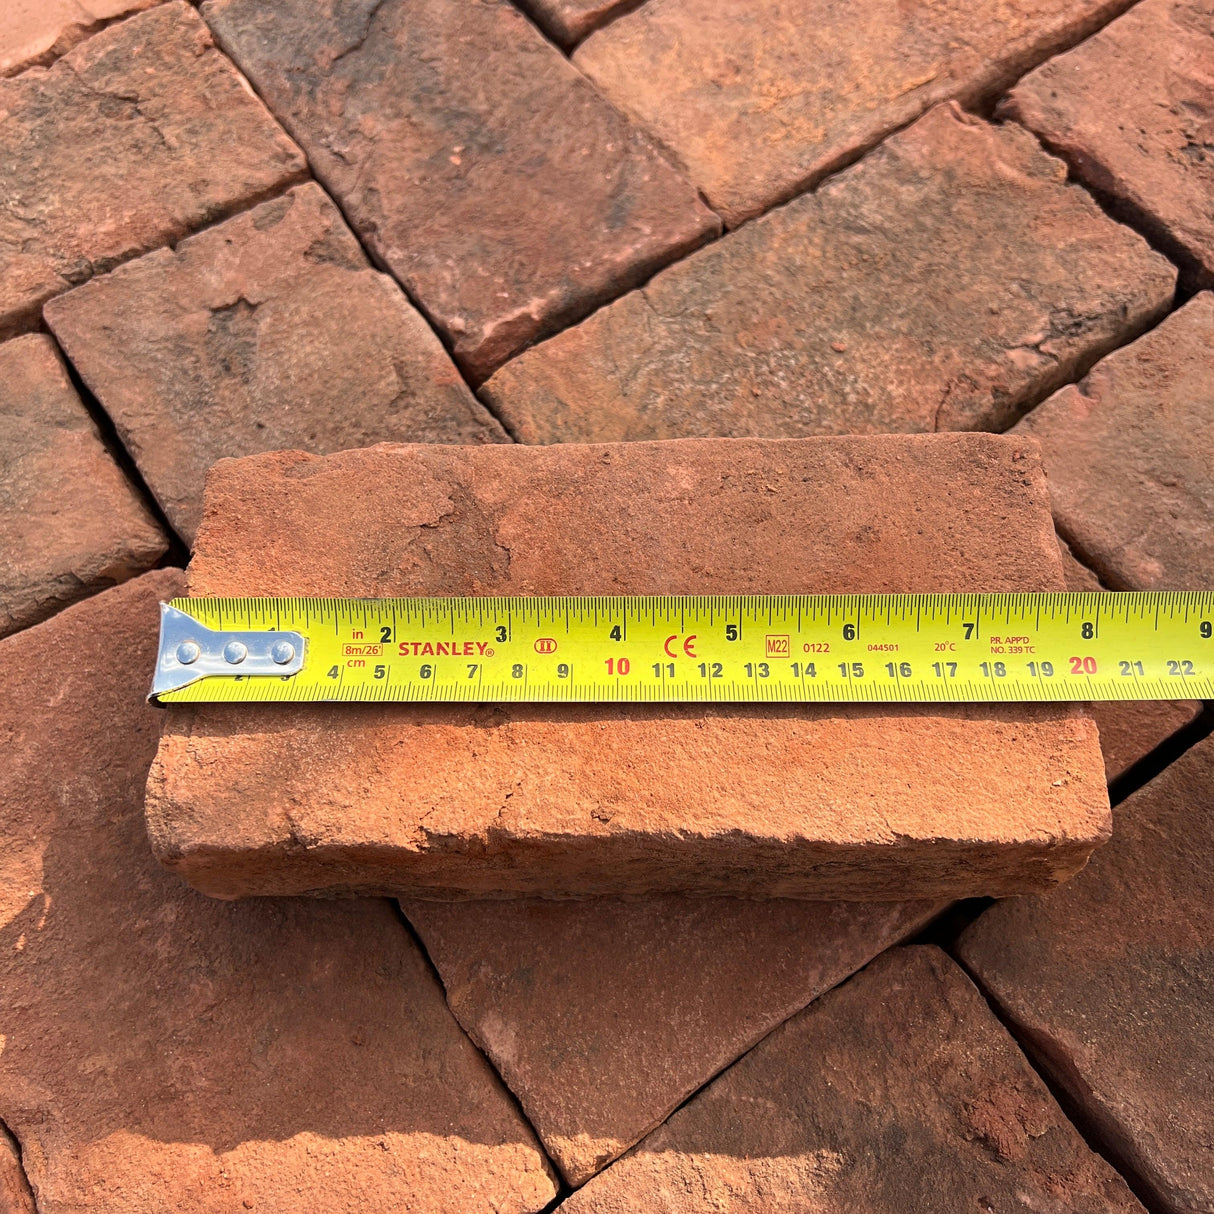 Handmade Clay Paving Brick - Type 1 - Reclaimed Brick Company